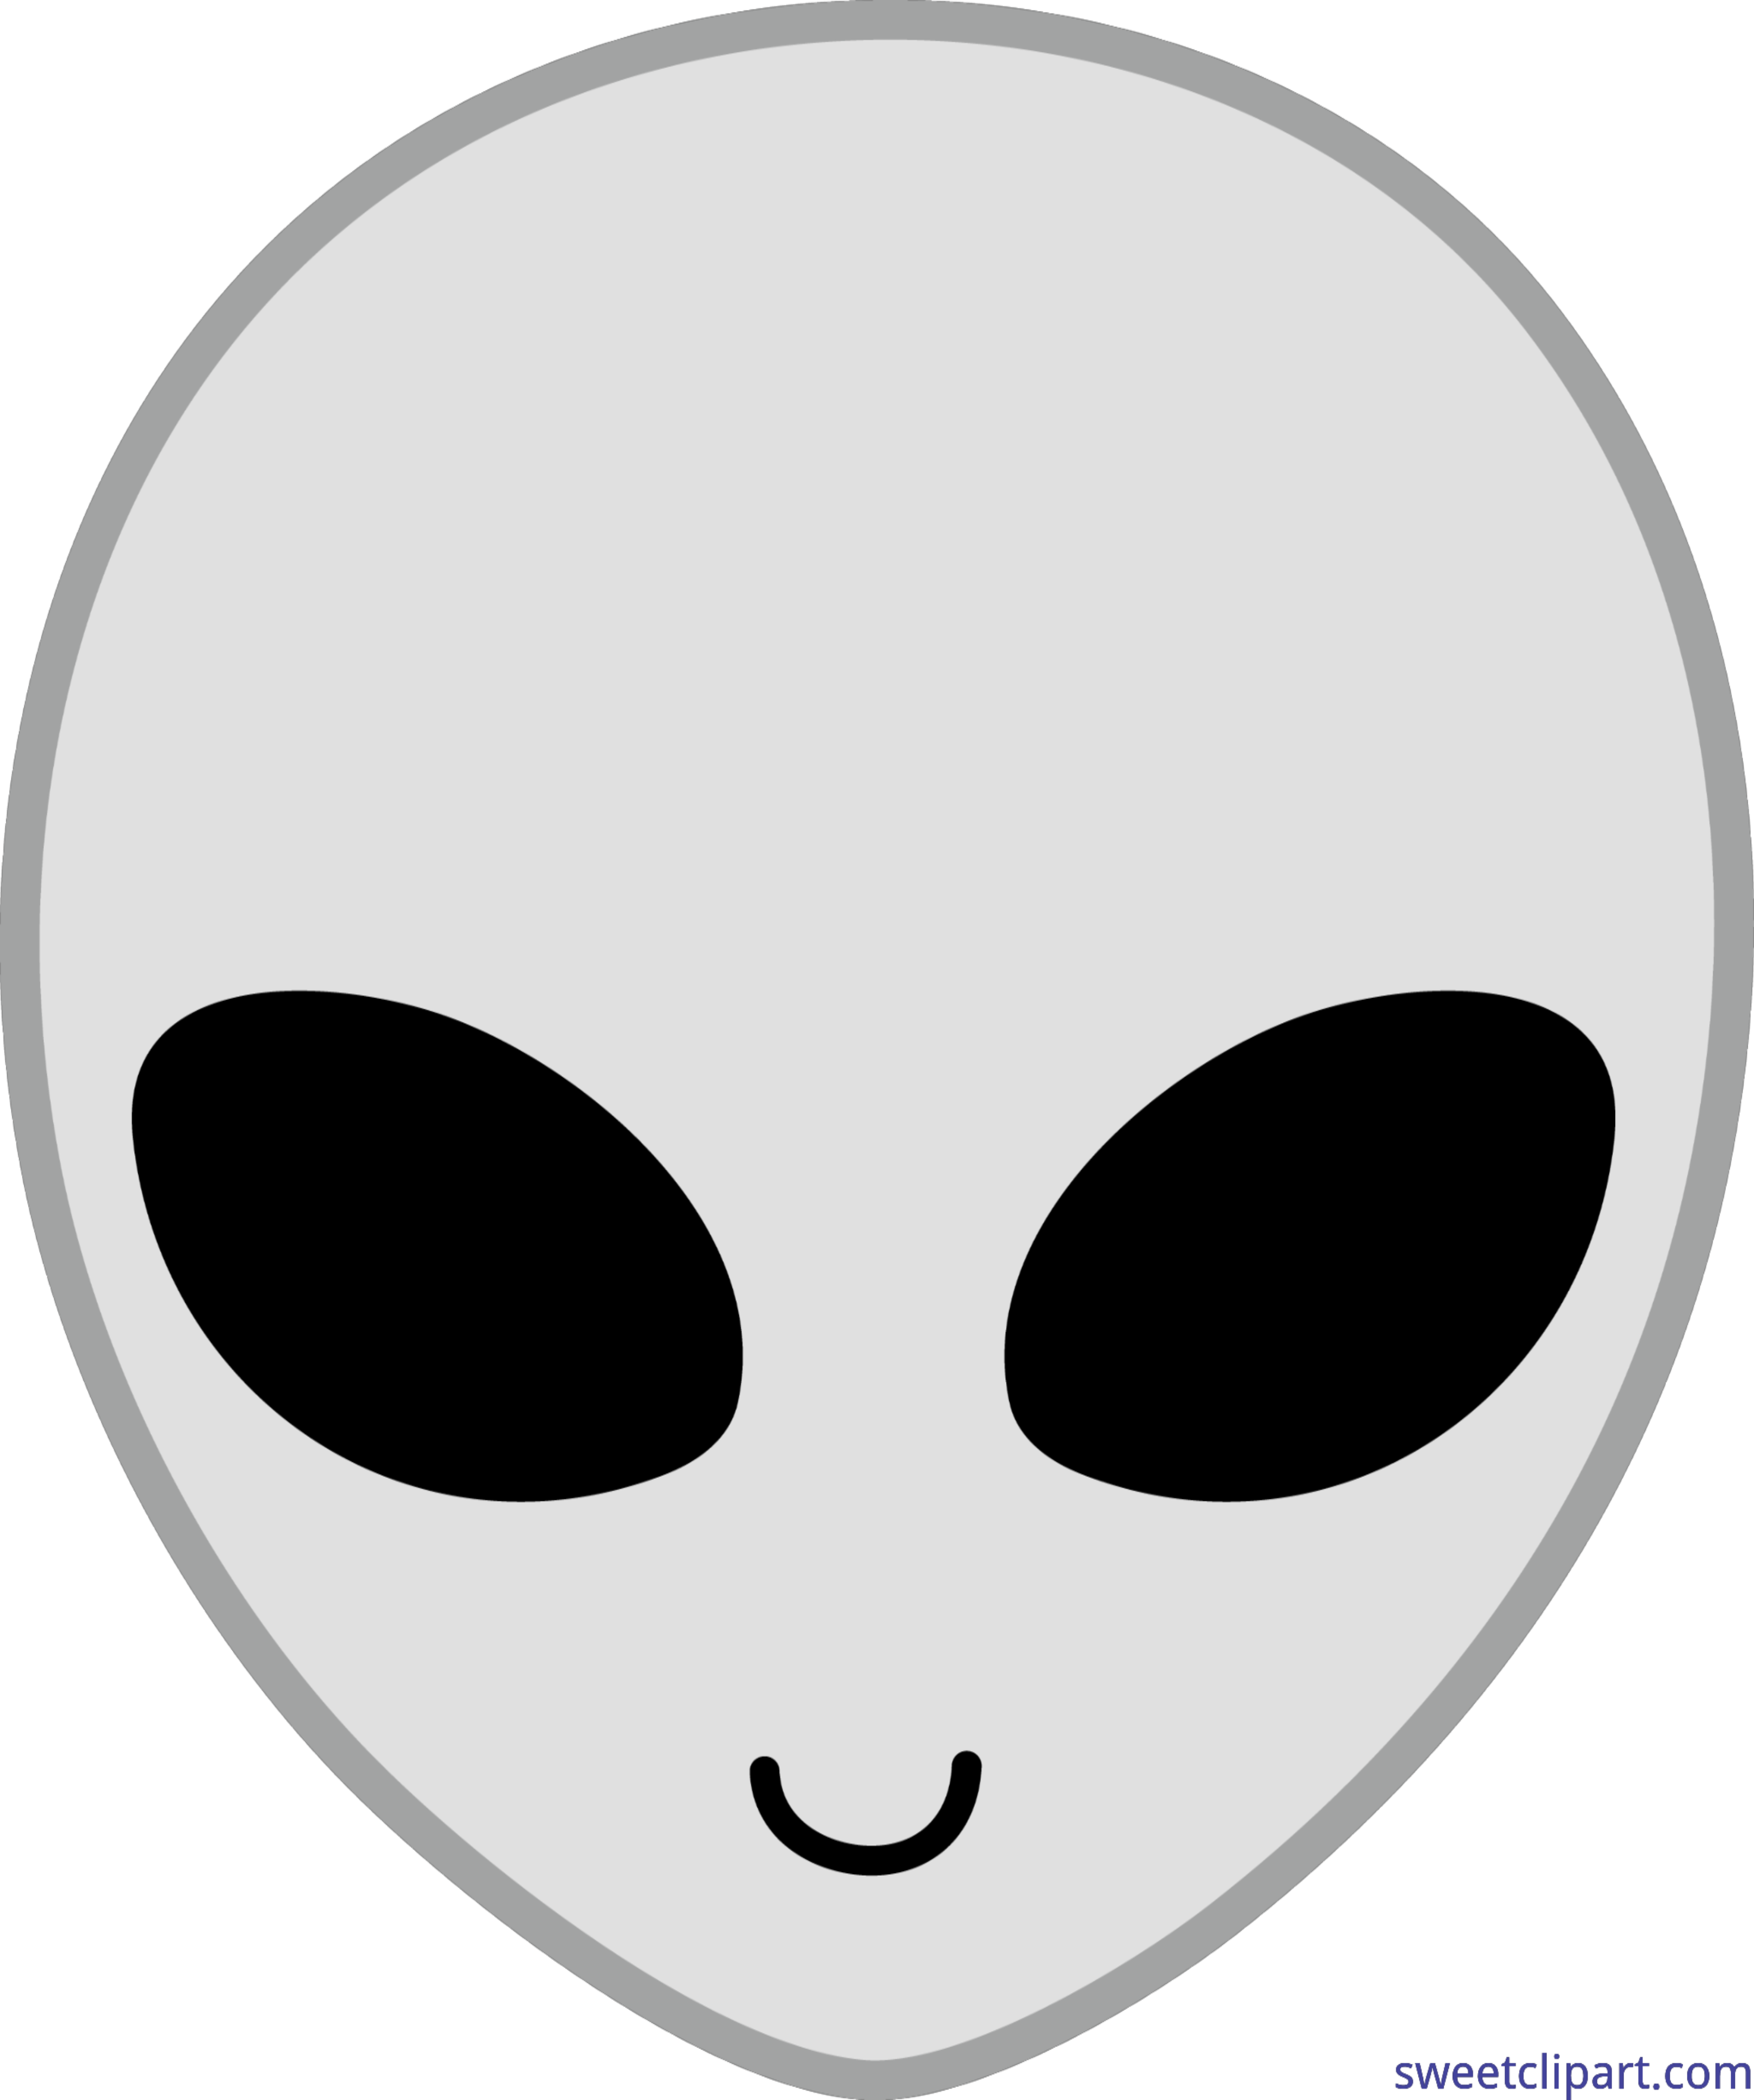 alien clipart grey